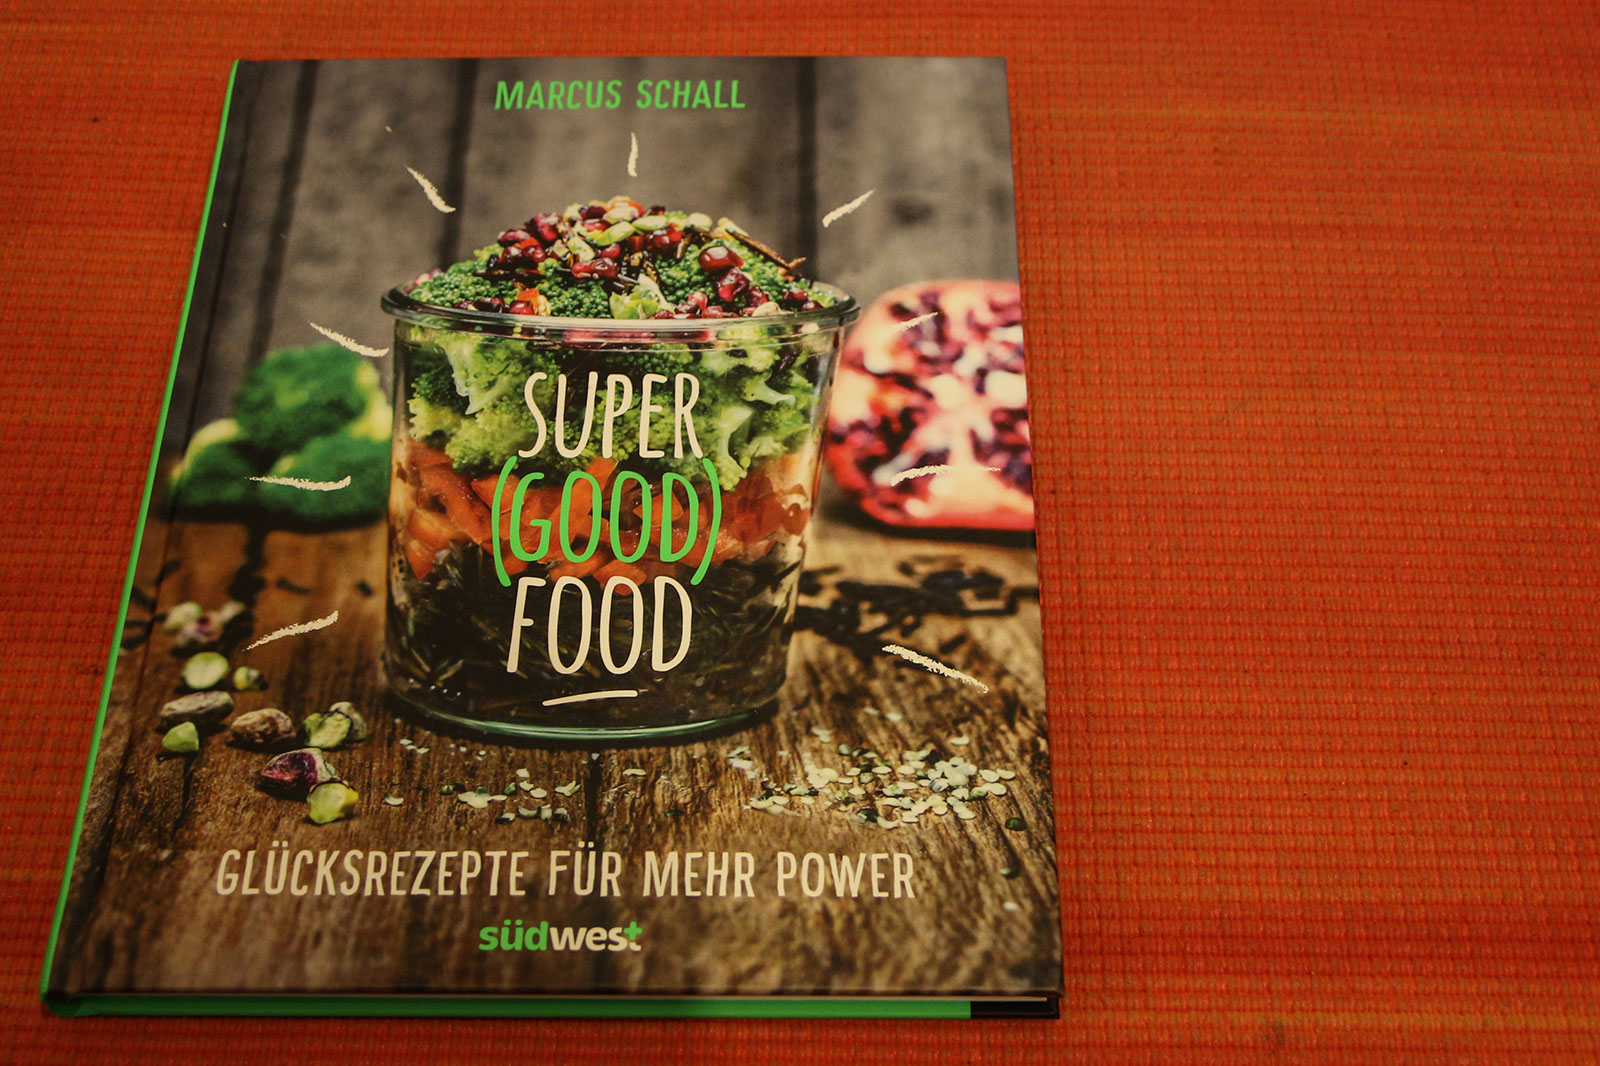 Super (Good) Food – Glücksrezepte für mehr Power